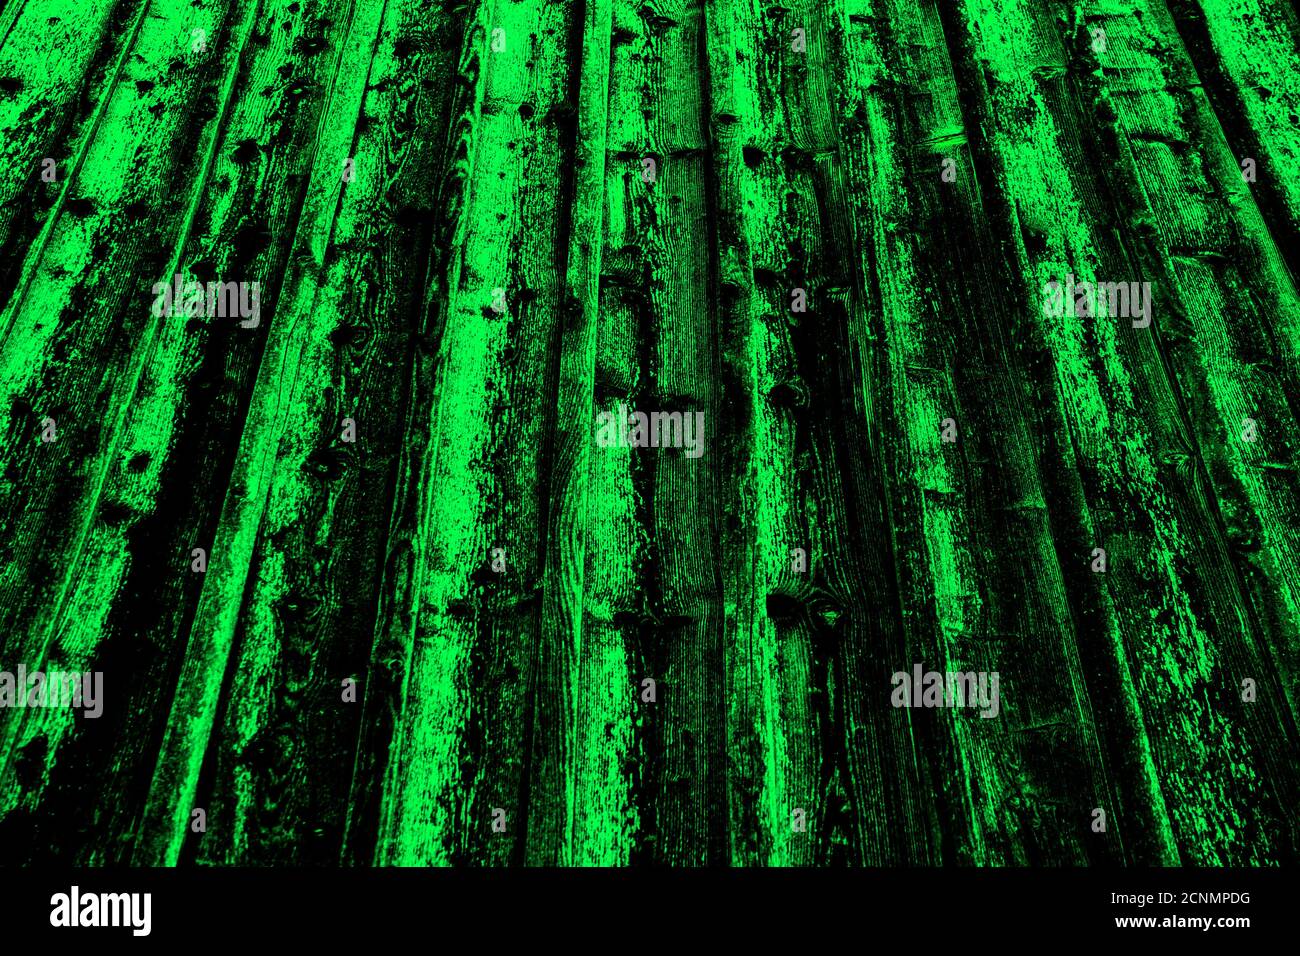 Textura de madera verde y negra con perspectiva decreciente Foto de stock